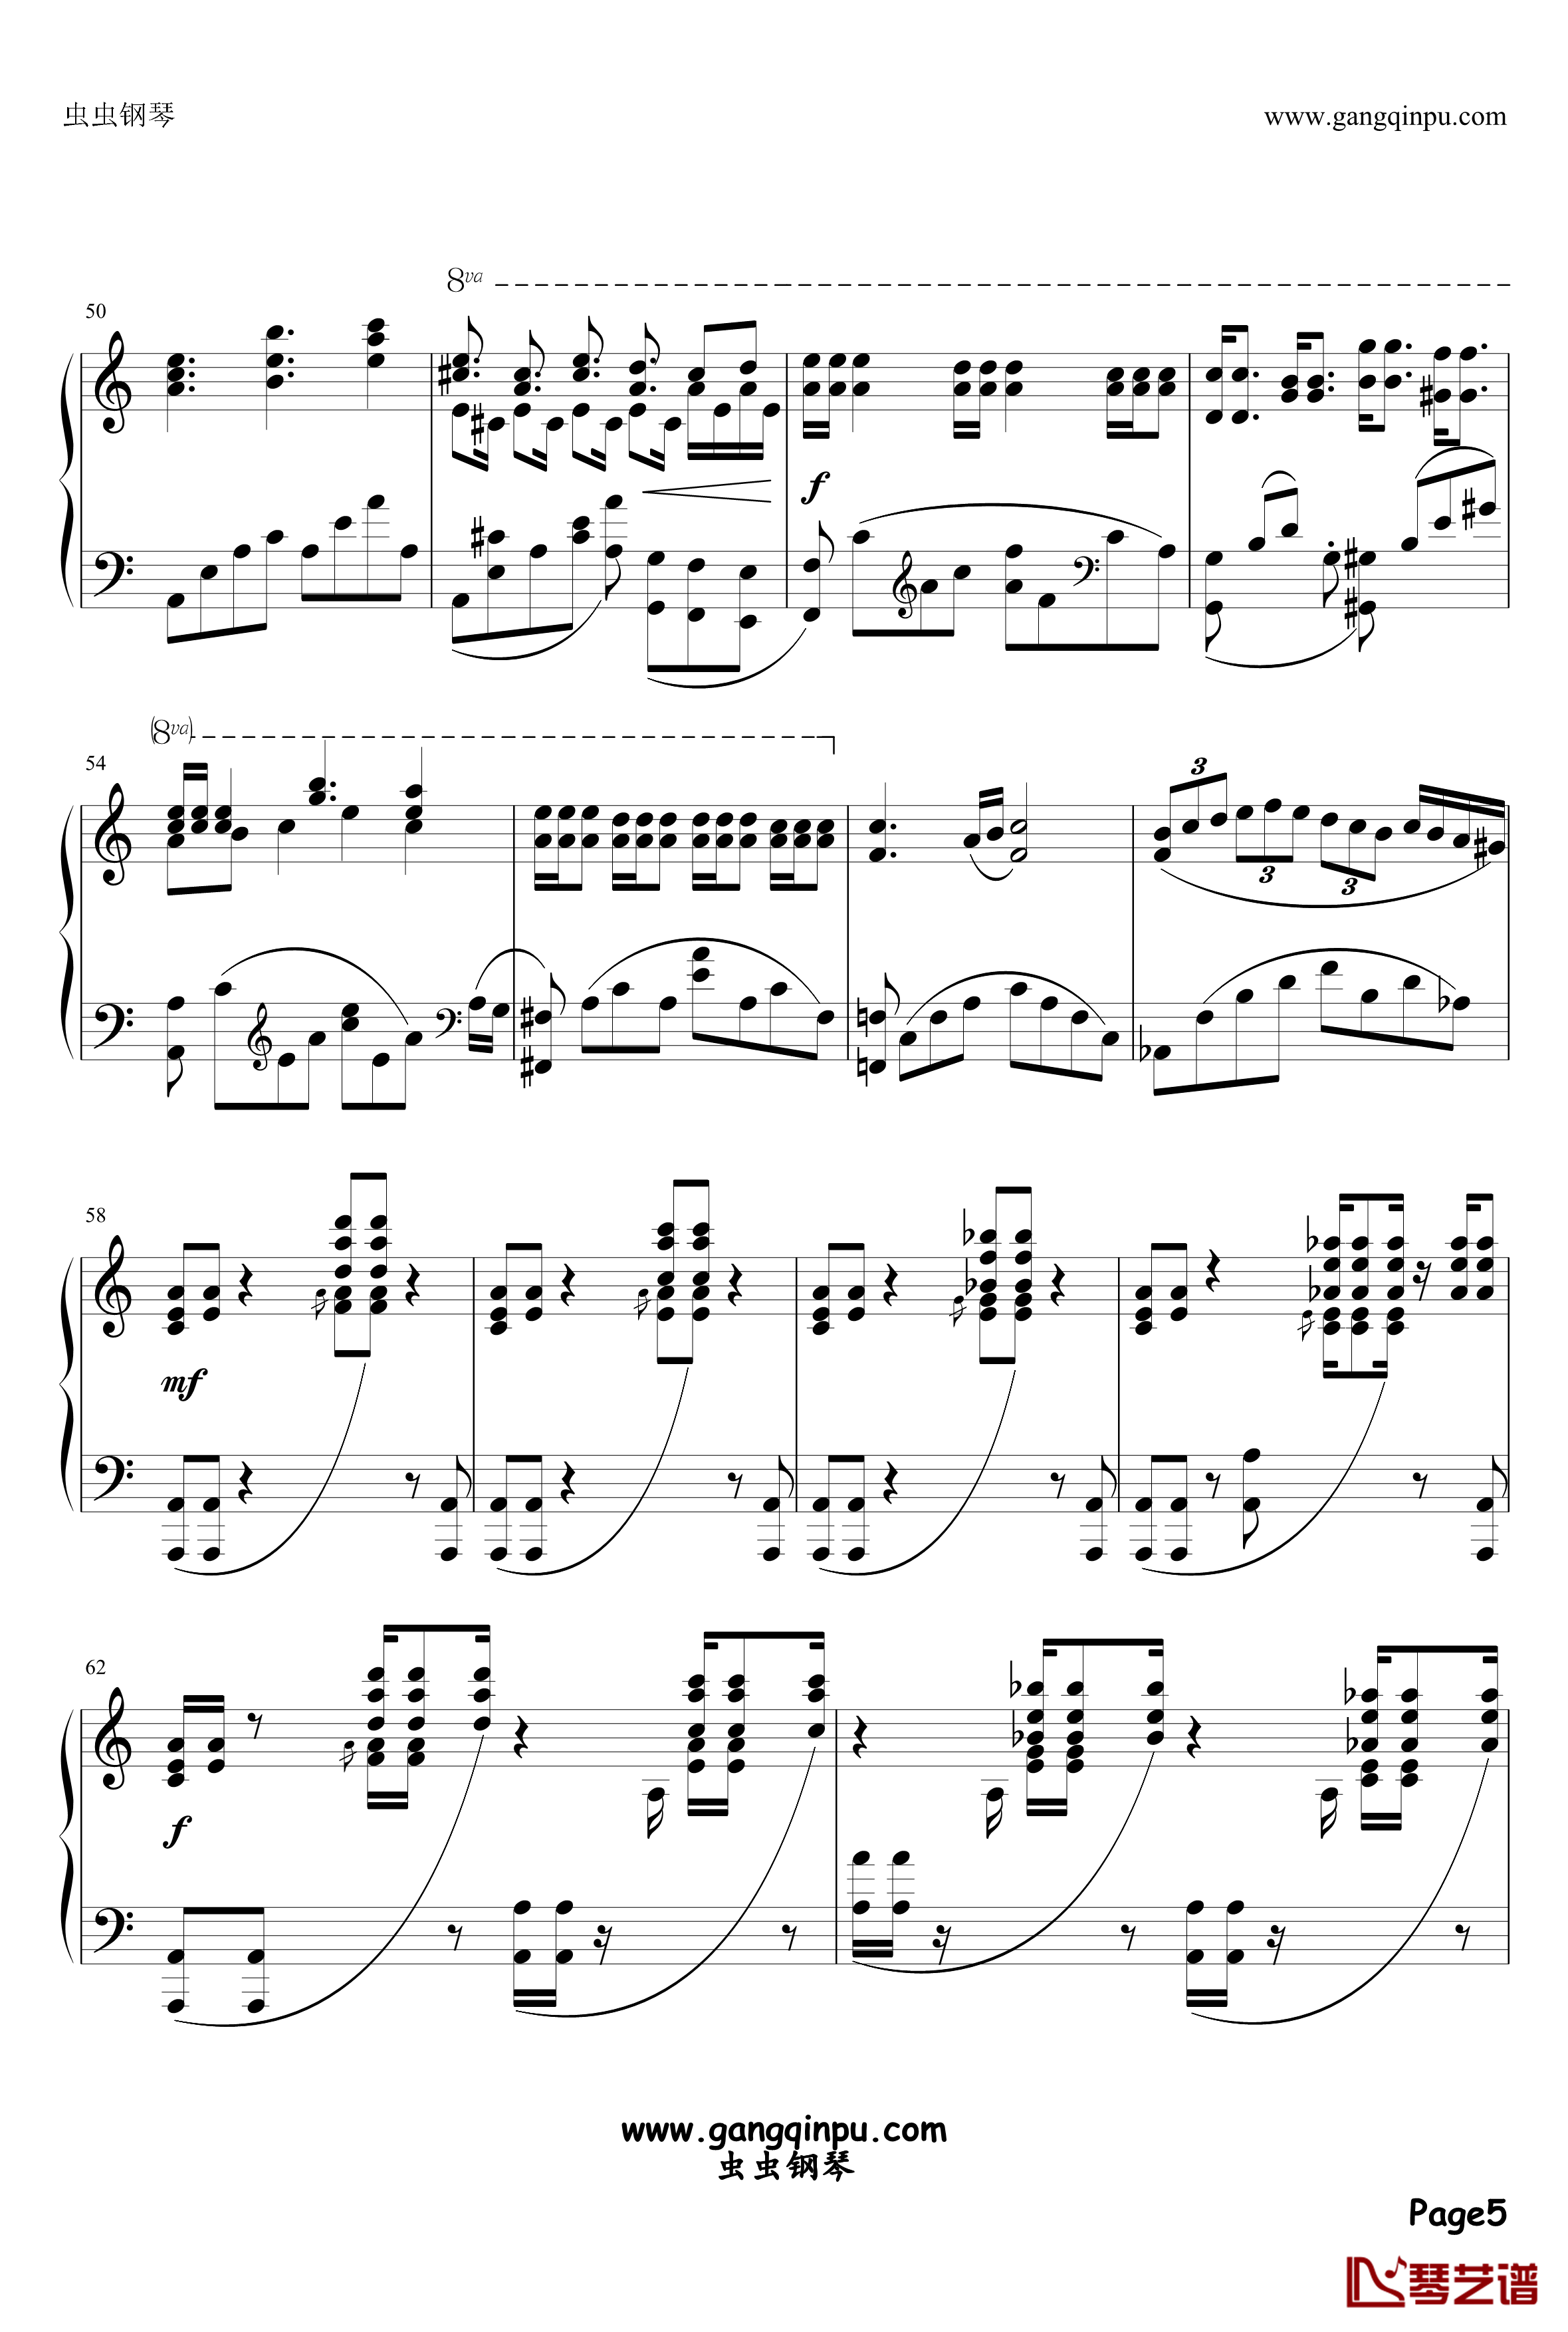 アストライアの双皿钢琴谱-ZODIACSYNDICATE5